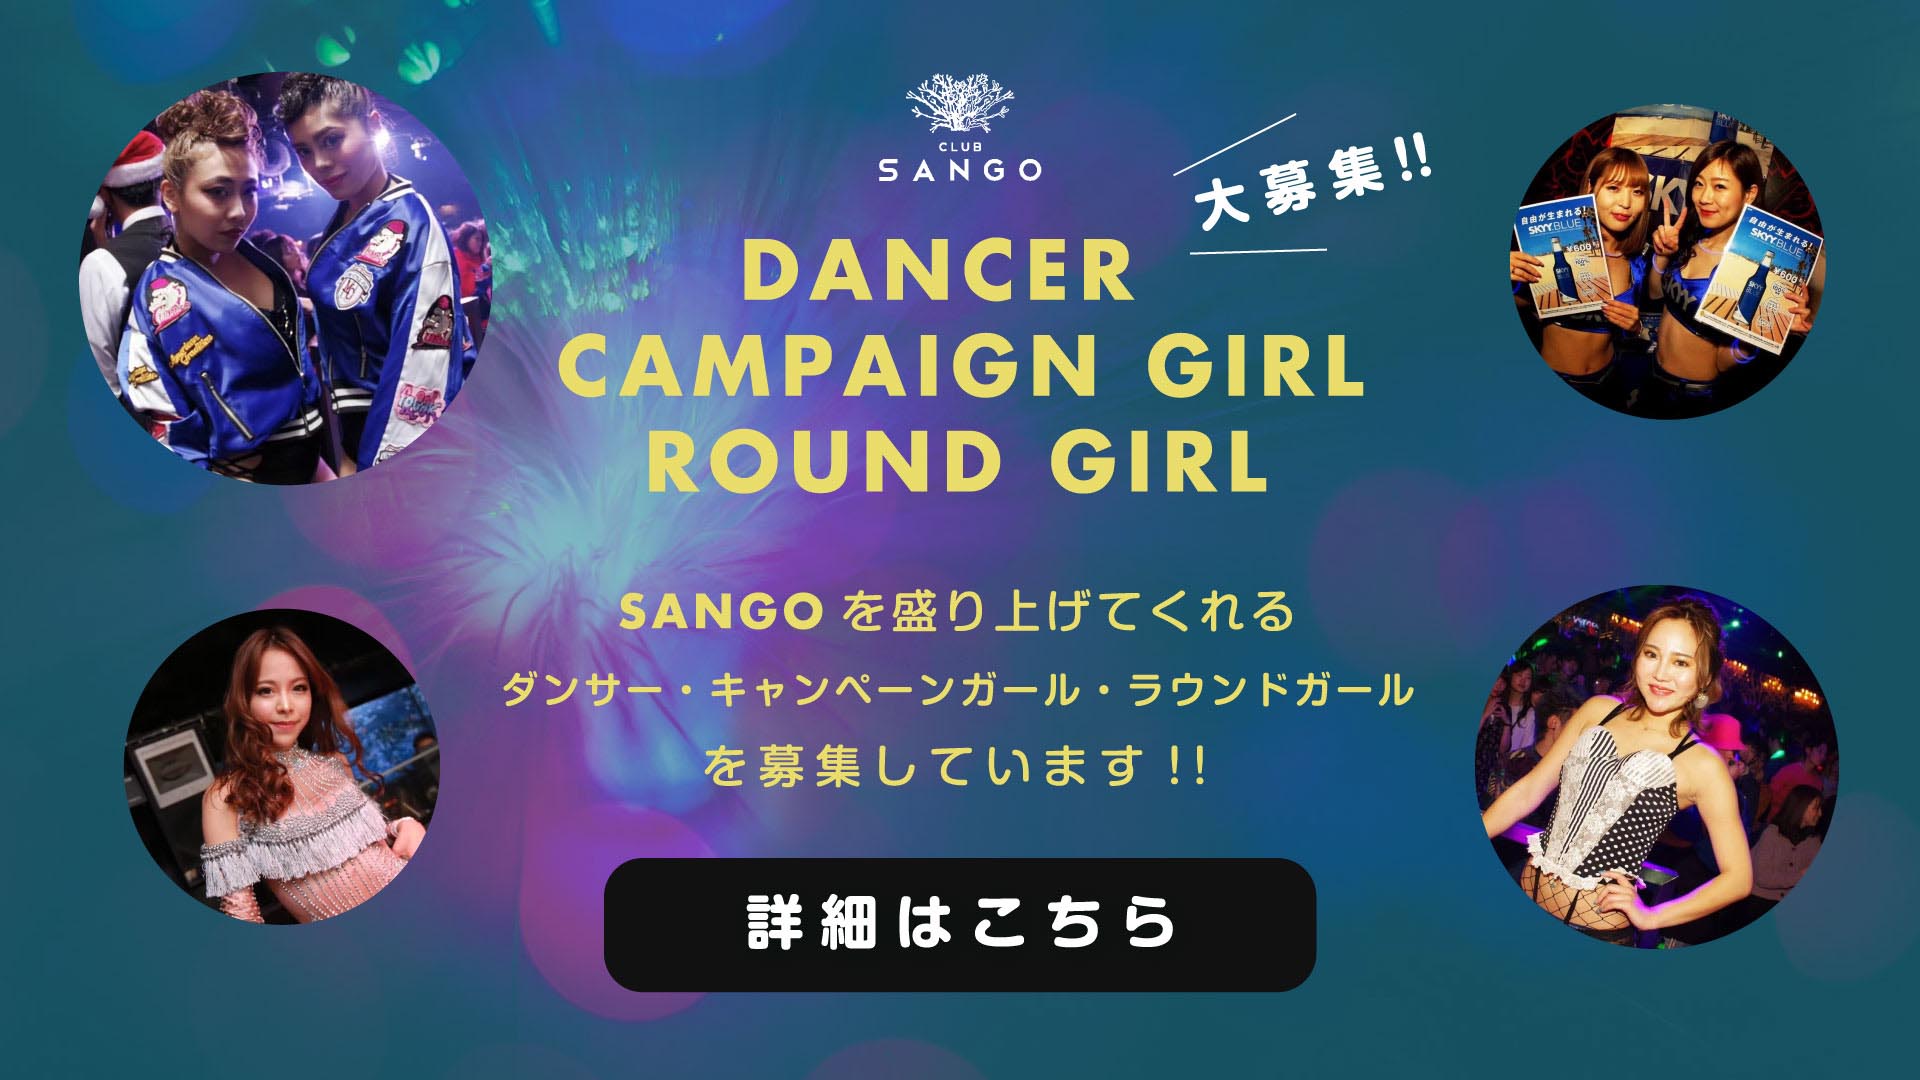 【大募集!!】DANCER / CAMPAIGN GIRLR / ROUND GIRL